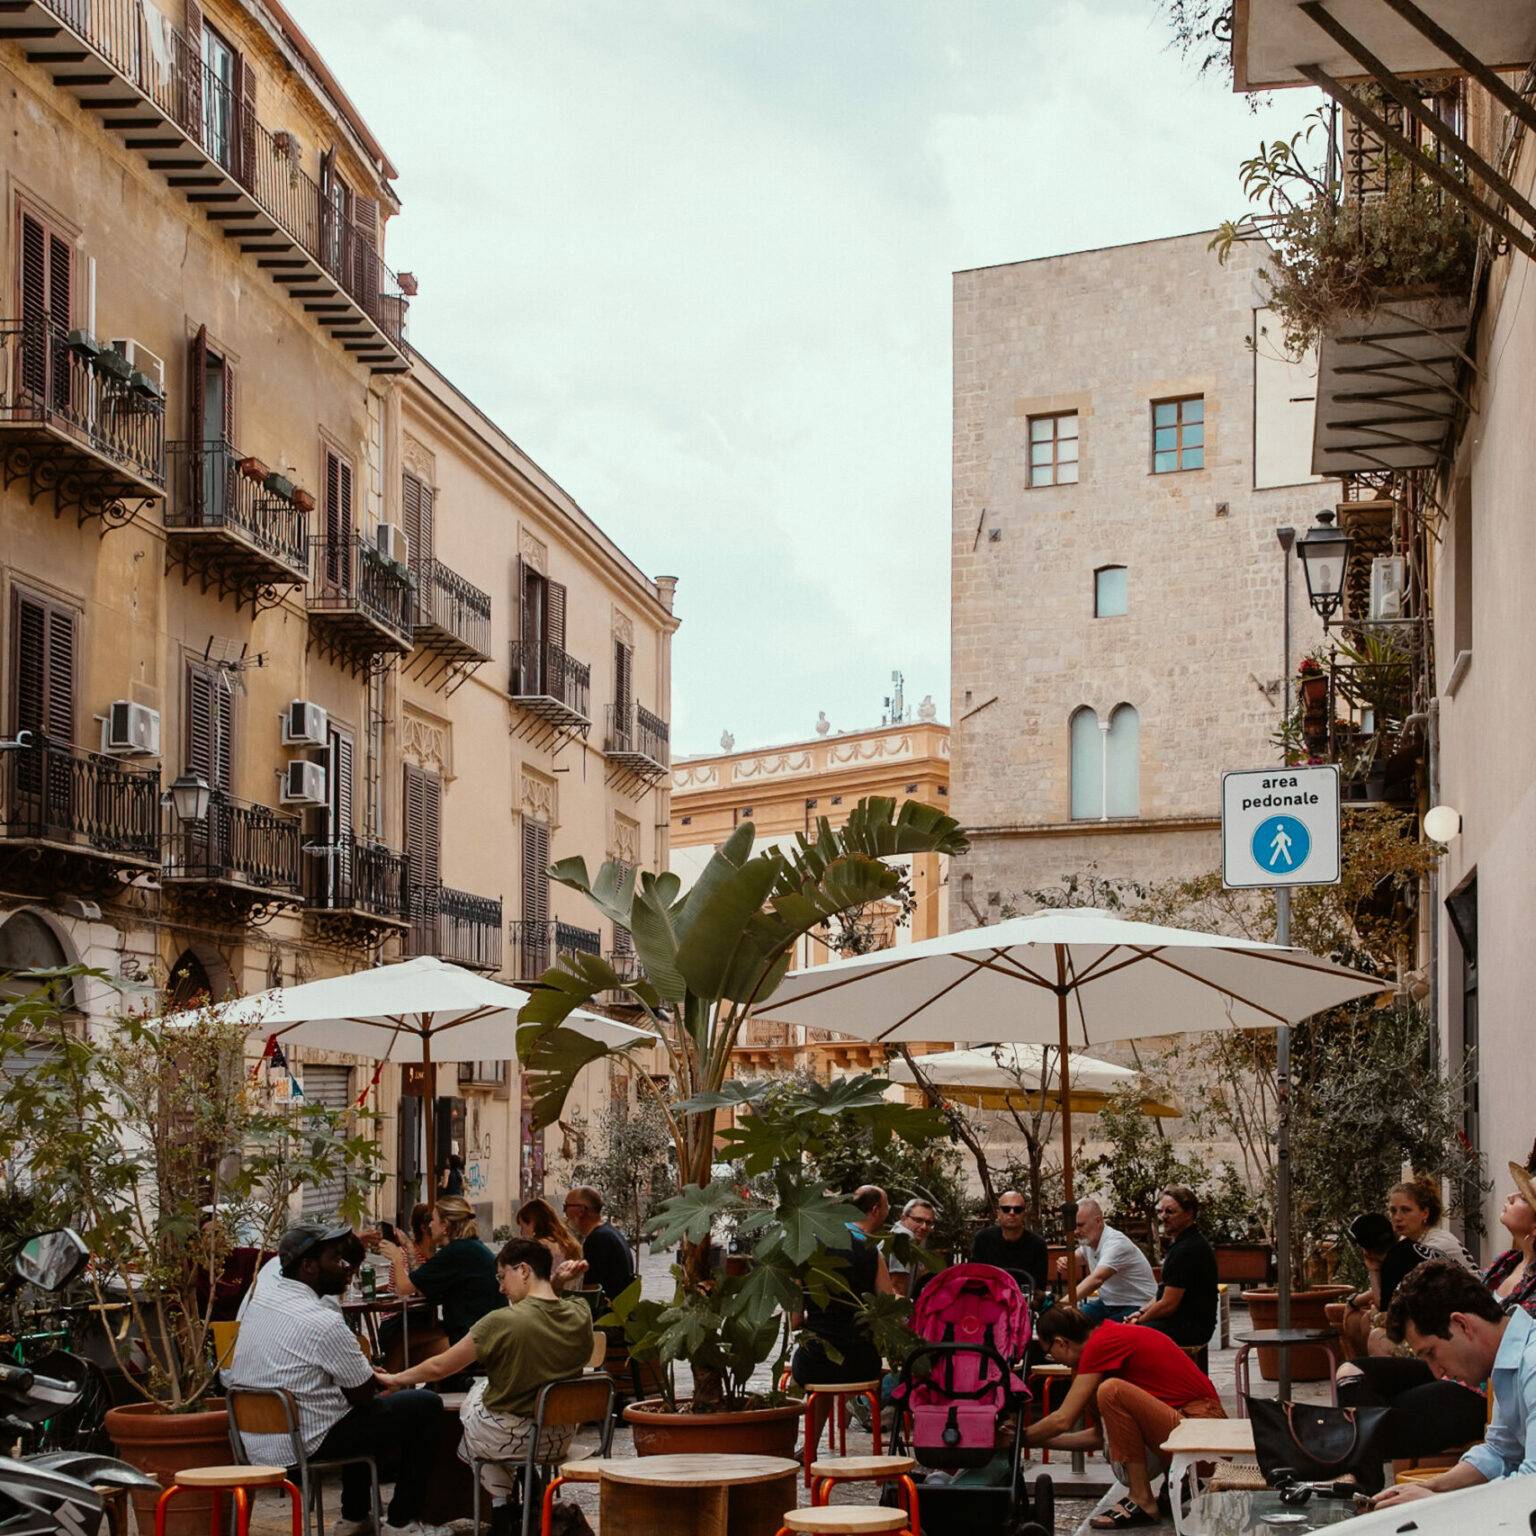 Ein kleiner Platz in Palermo, Menschen sitzen in einem Cafe.